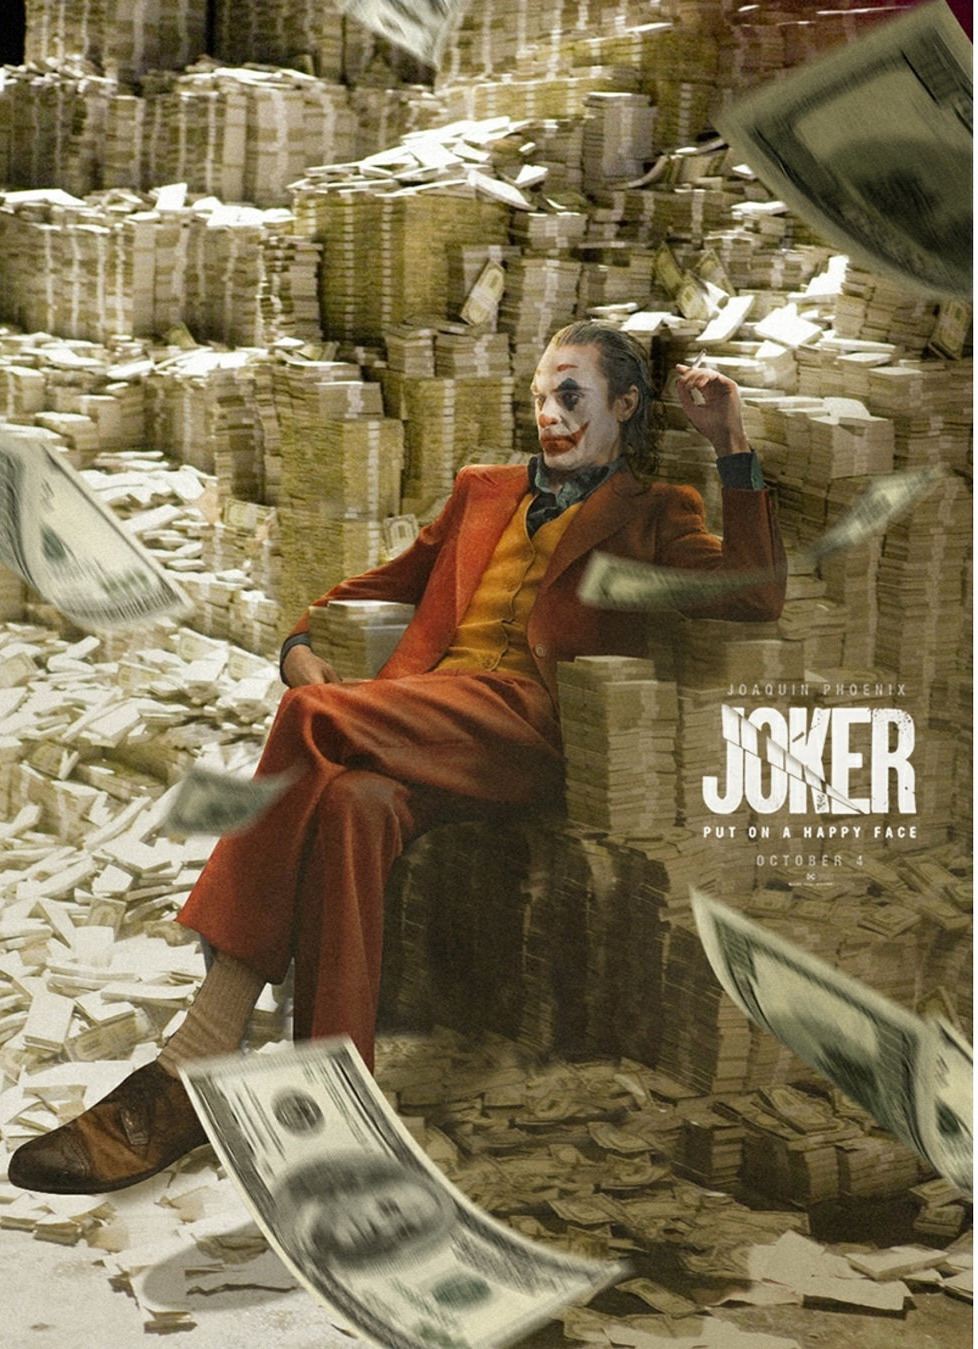 《小丑》破10亿美元特别预告 感谢全球粉丝的赞赏